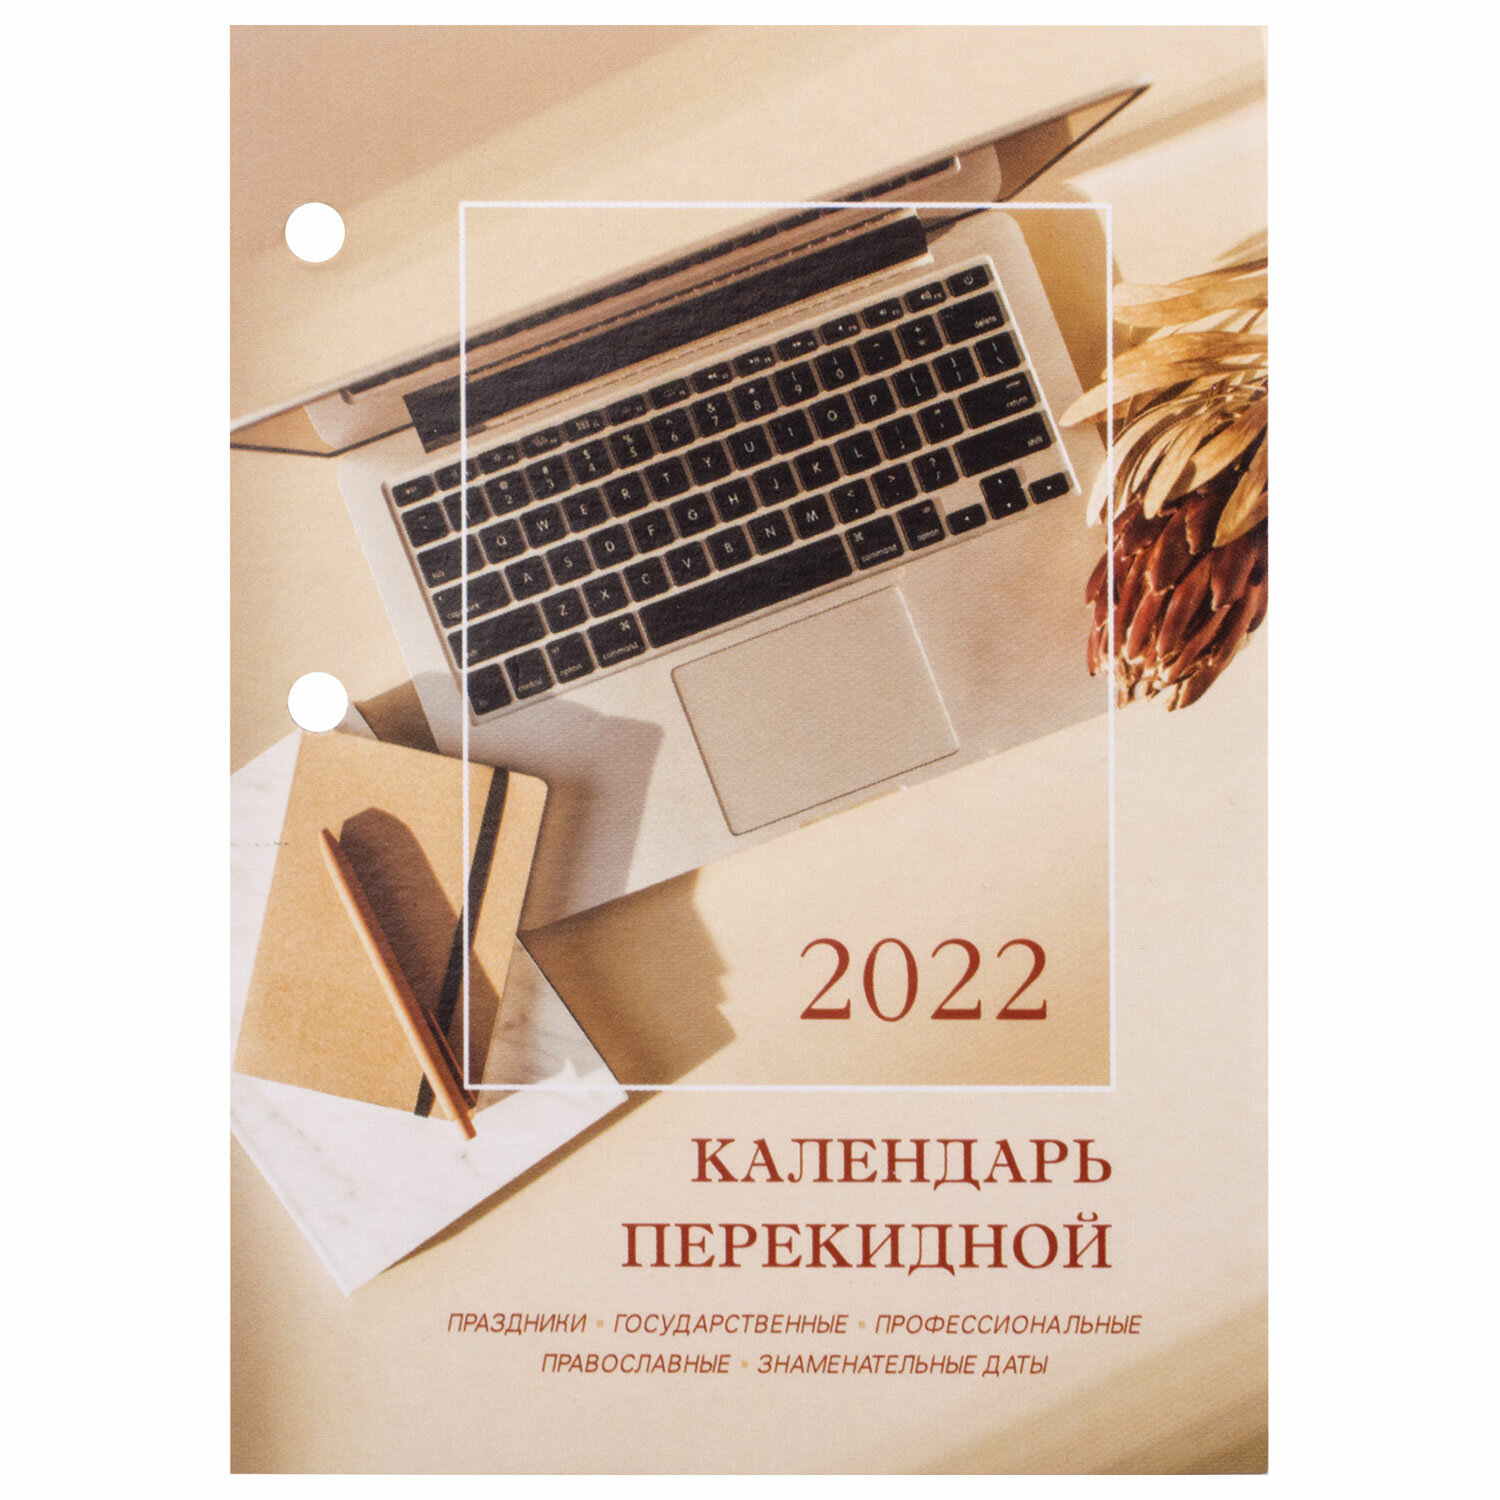 Ноутбук Для Работы 2022 Купить